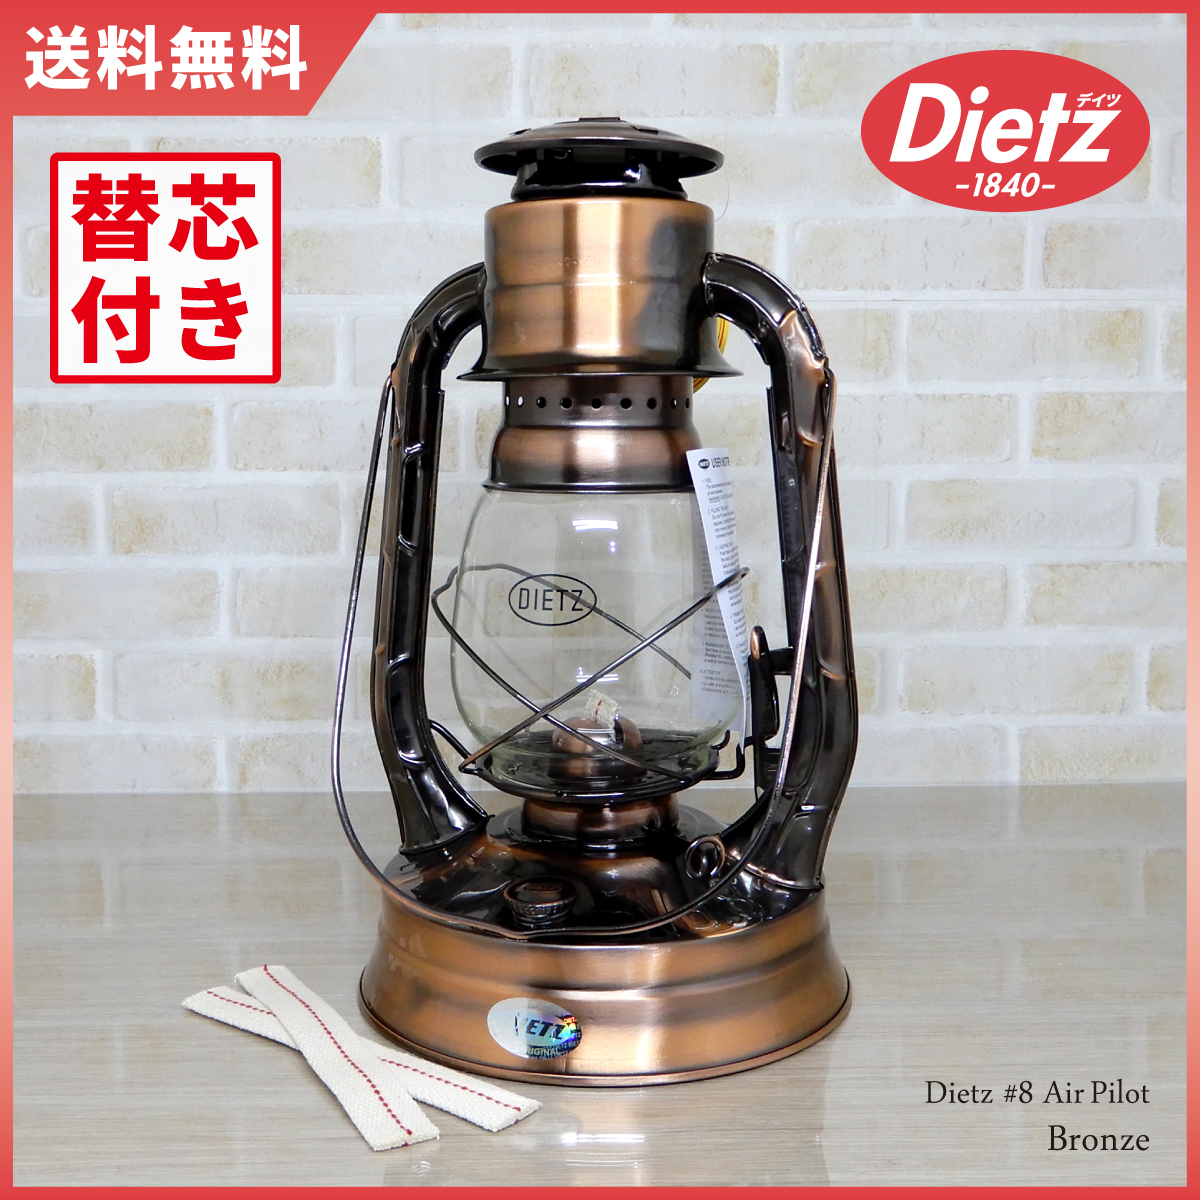 替芯2本付【送料無料】新品 Dietz #8 Air Pilot Oil Lantern - Bronze 【日本未発売】 ◇デイツ No.8 ブロンズ 青銅 ハリケーンランタン 銅_画像1